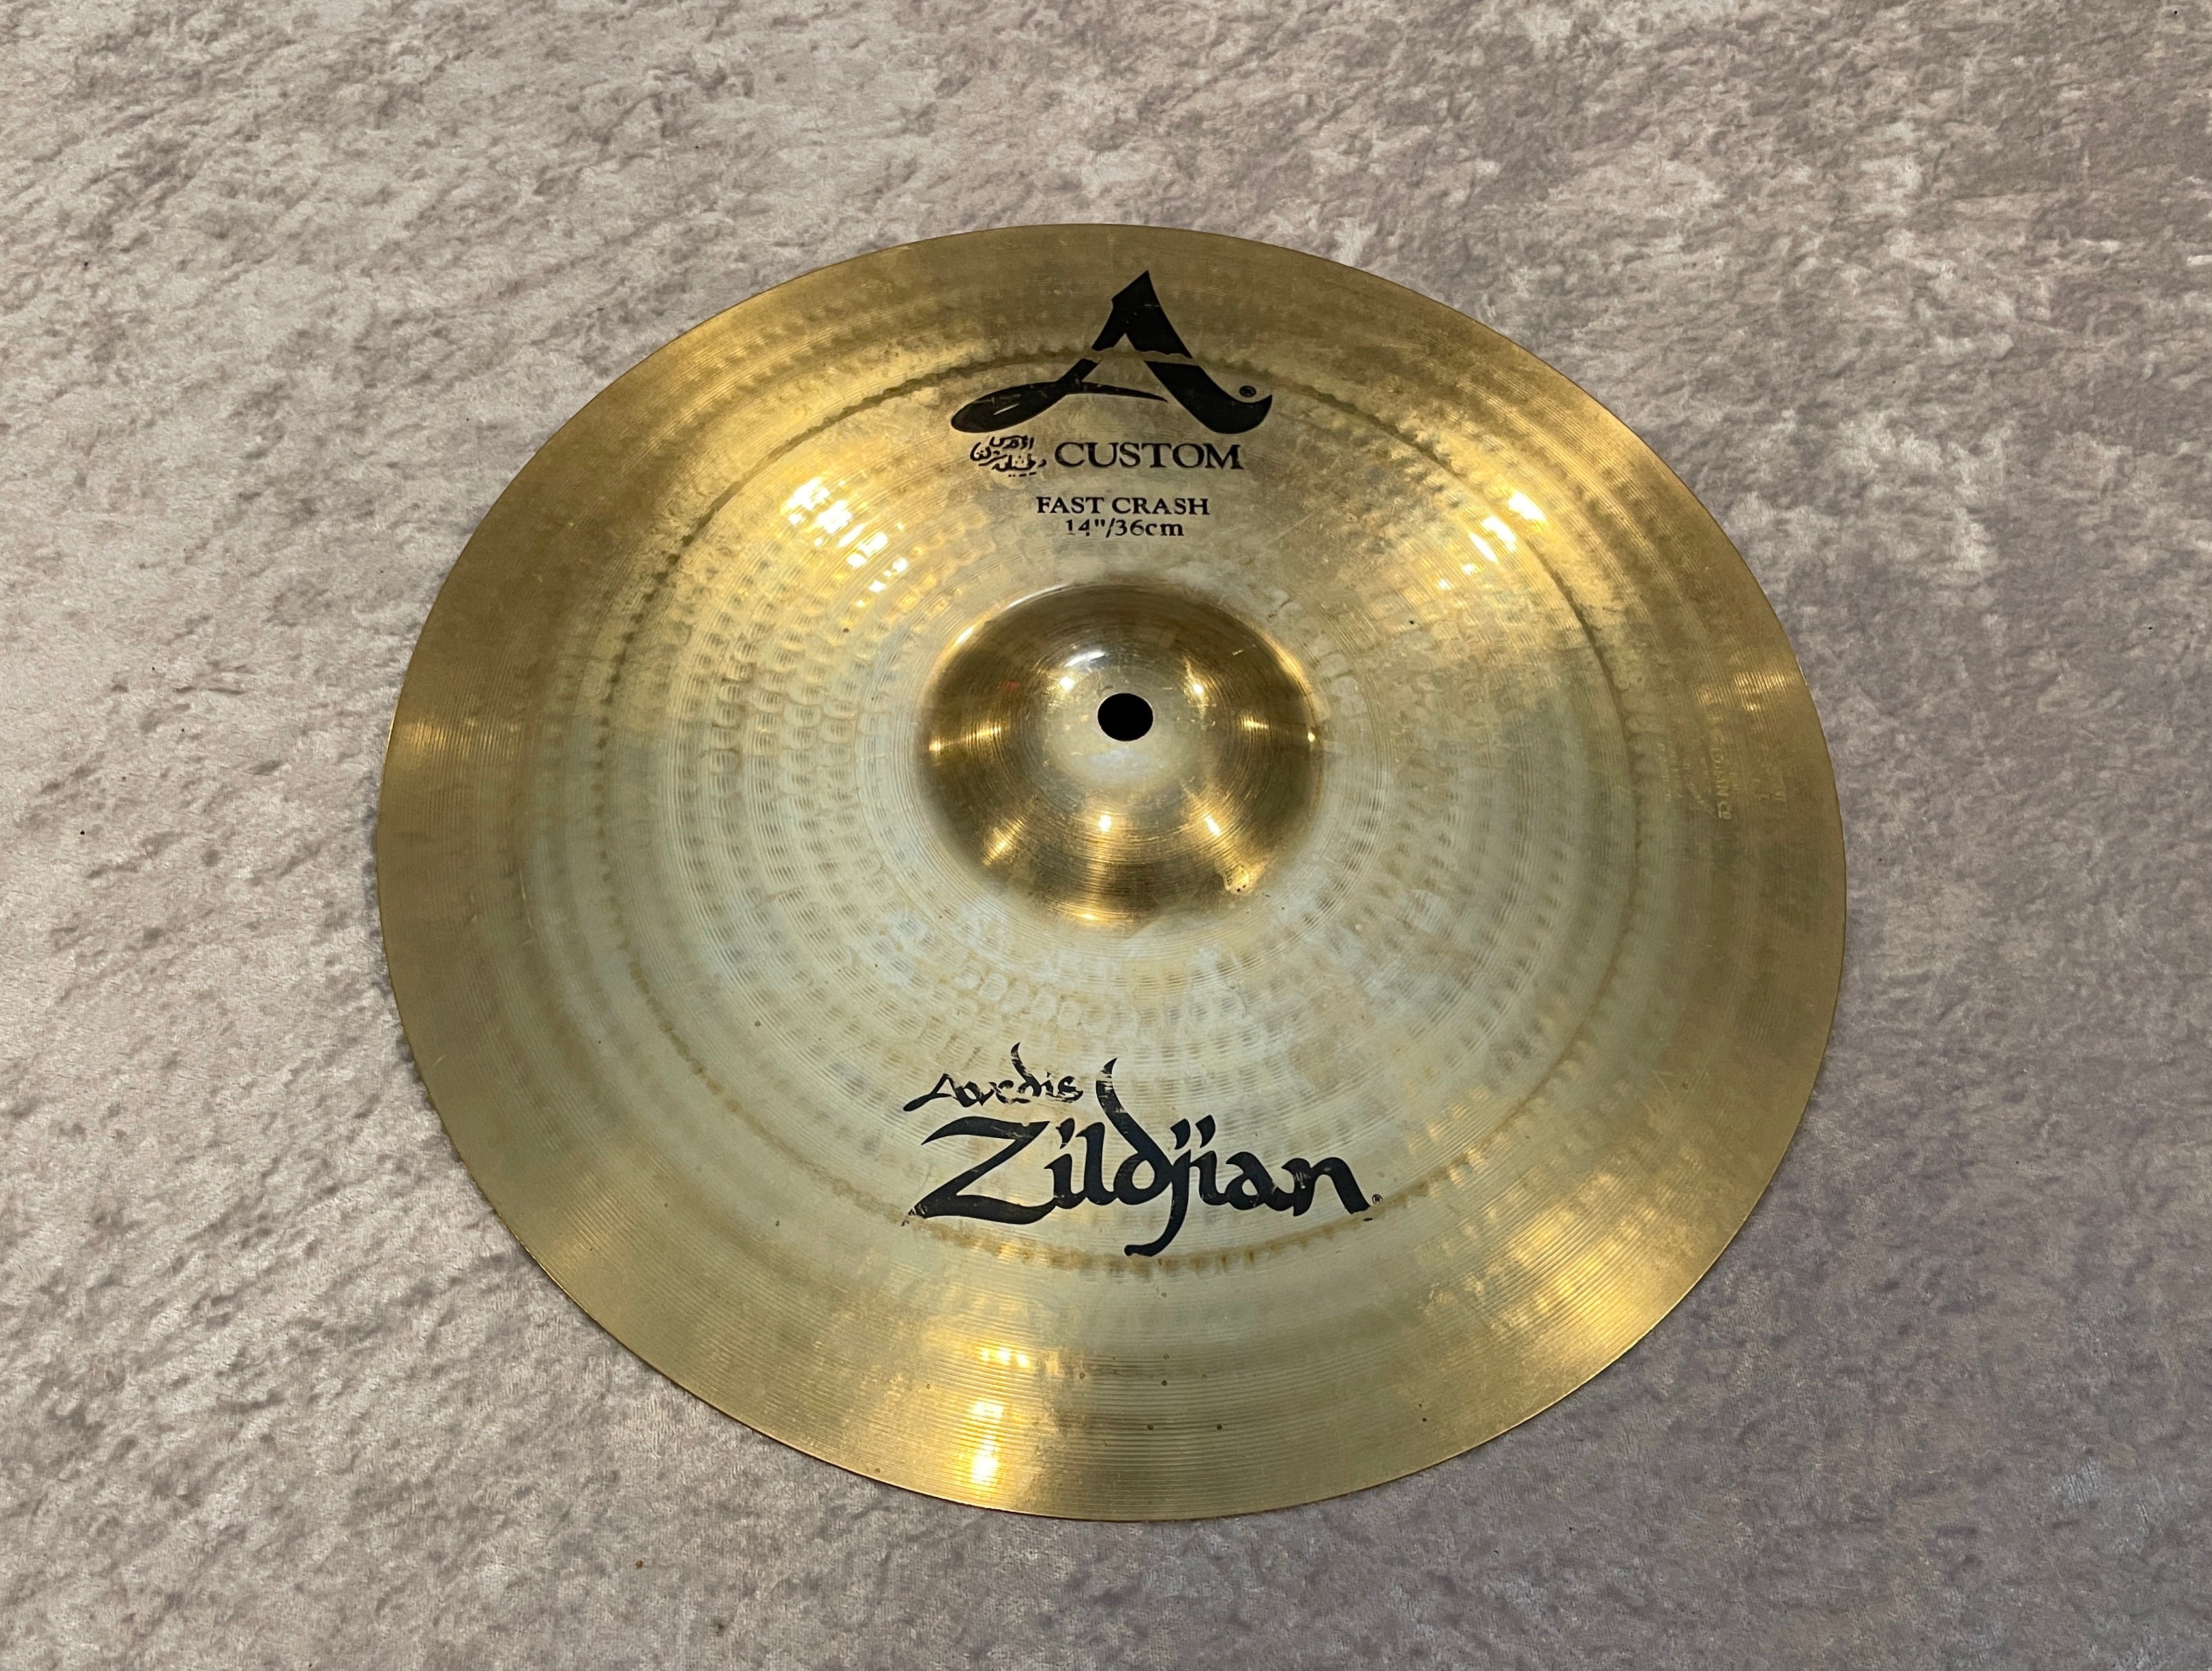 14 Zildjian A Custom Fast Crash Cymbal 738g – Drugan's Drums u0026 Guitars